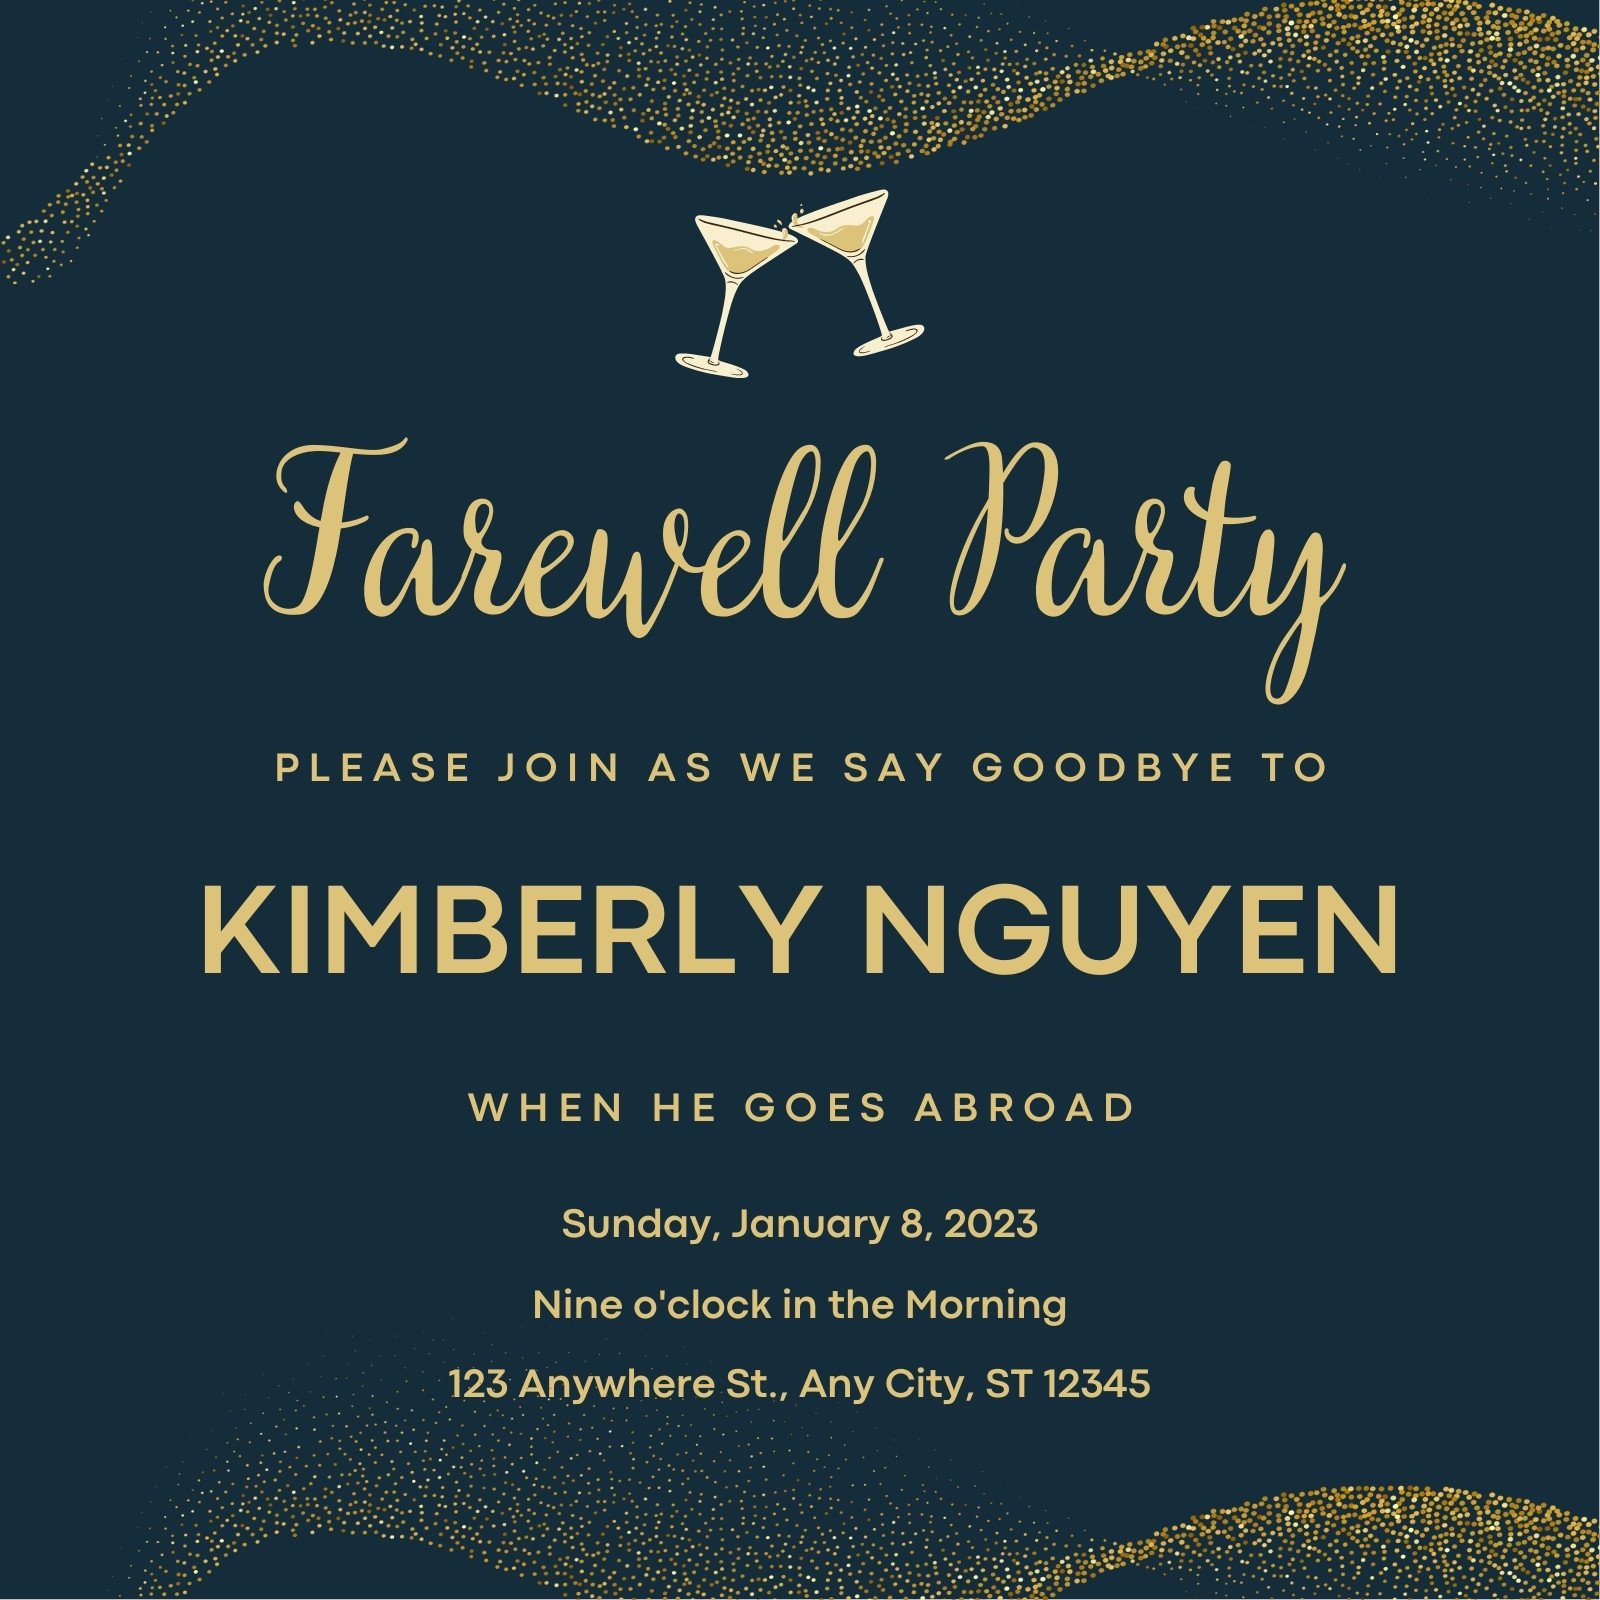 Farewell party invitation